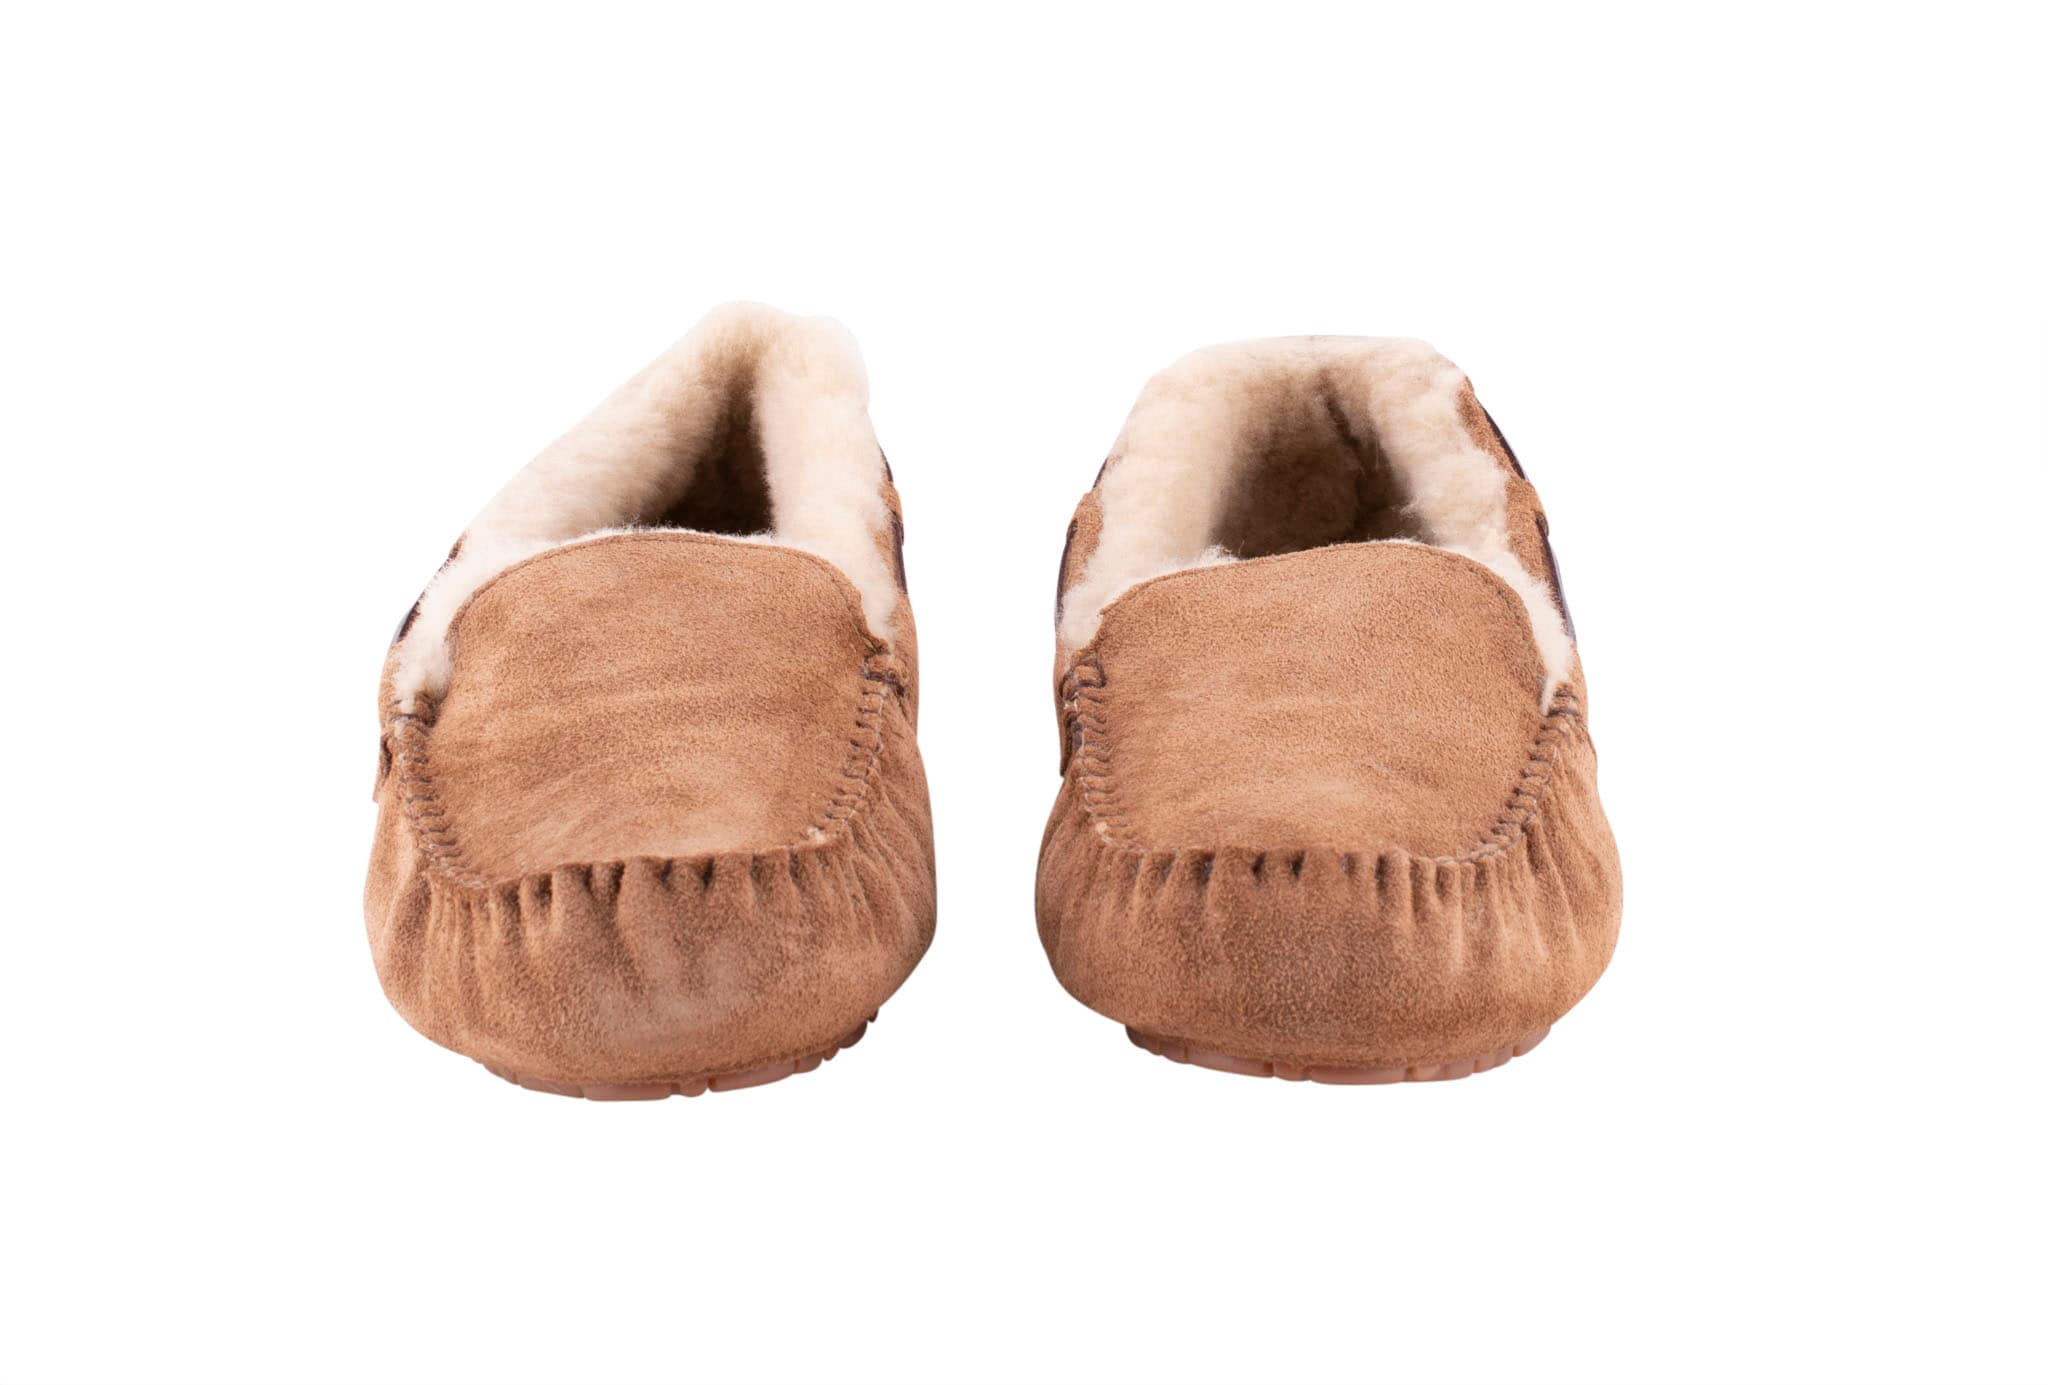 Saga ballerina slippers for women.